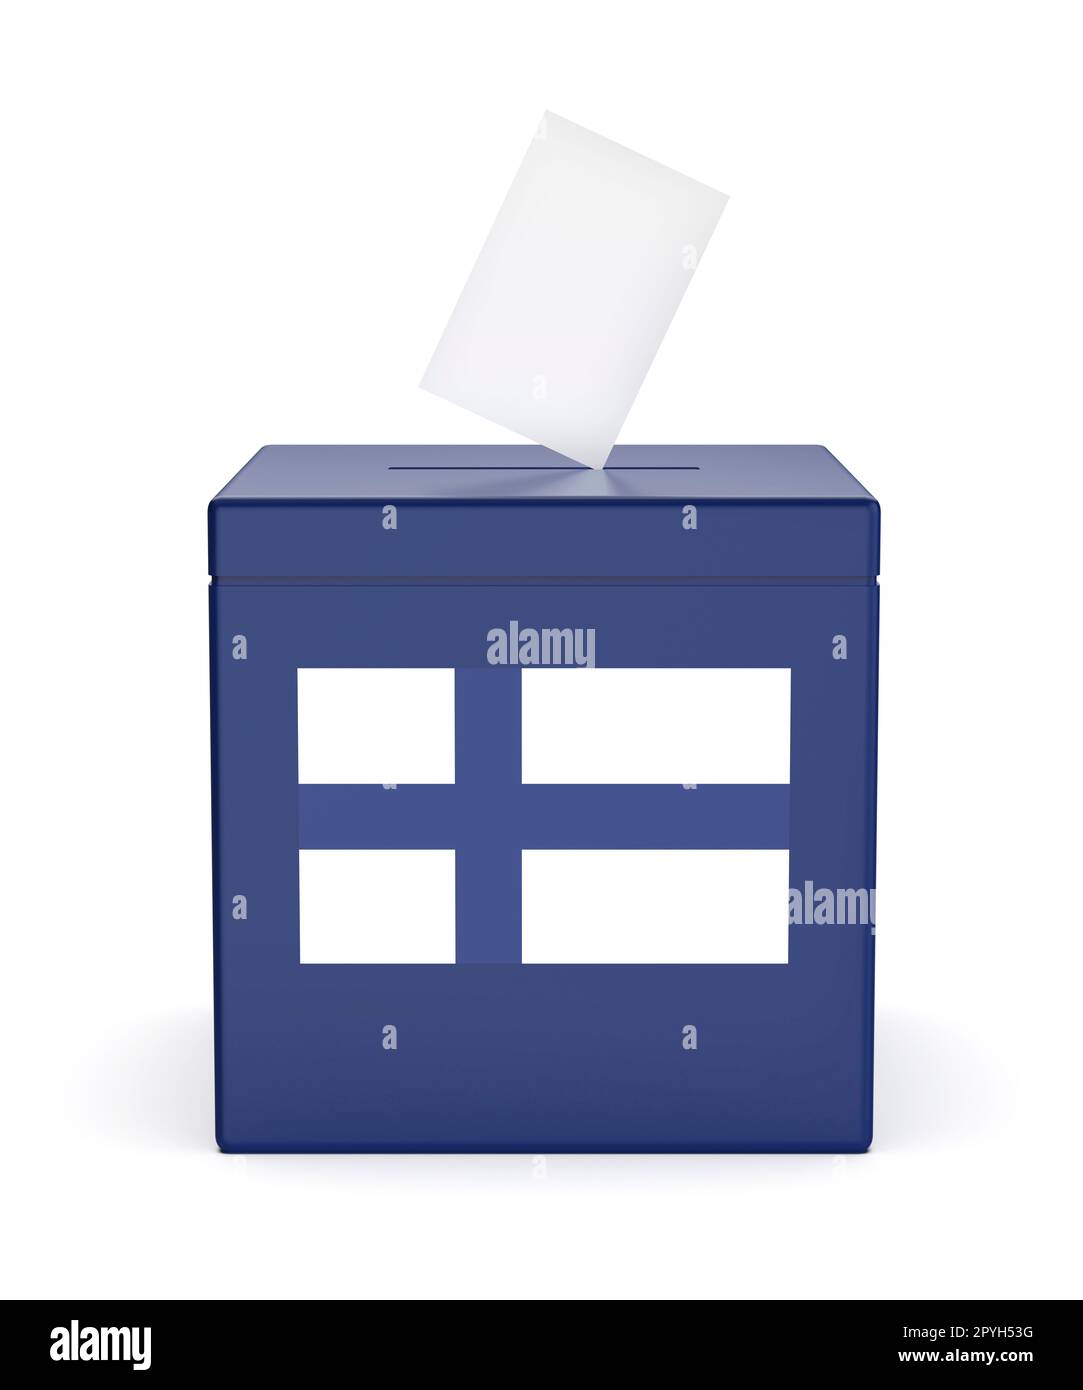 Urne avec le drapeau de la Finlande, image concept pour les élections en Finlande Banque D'Images